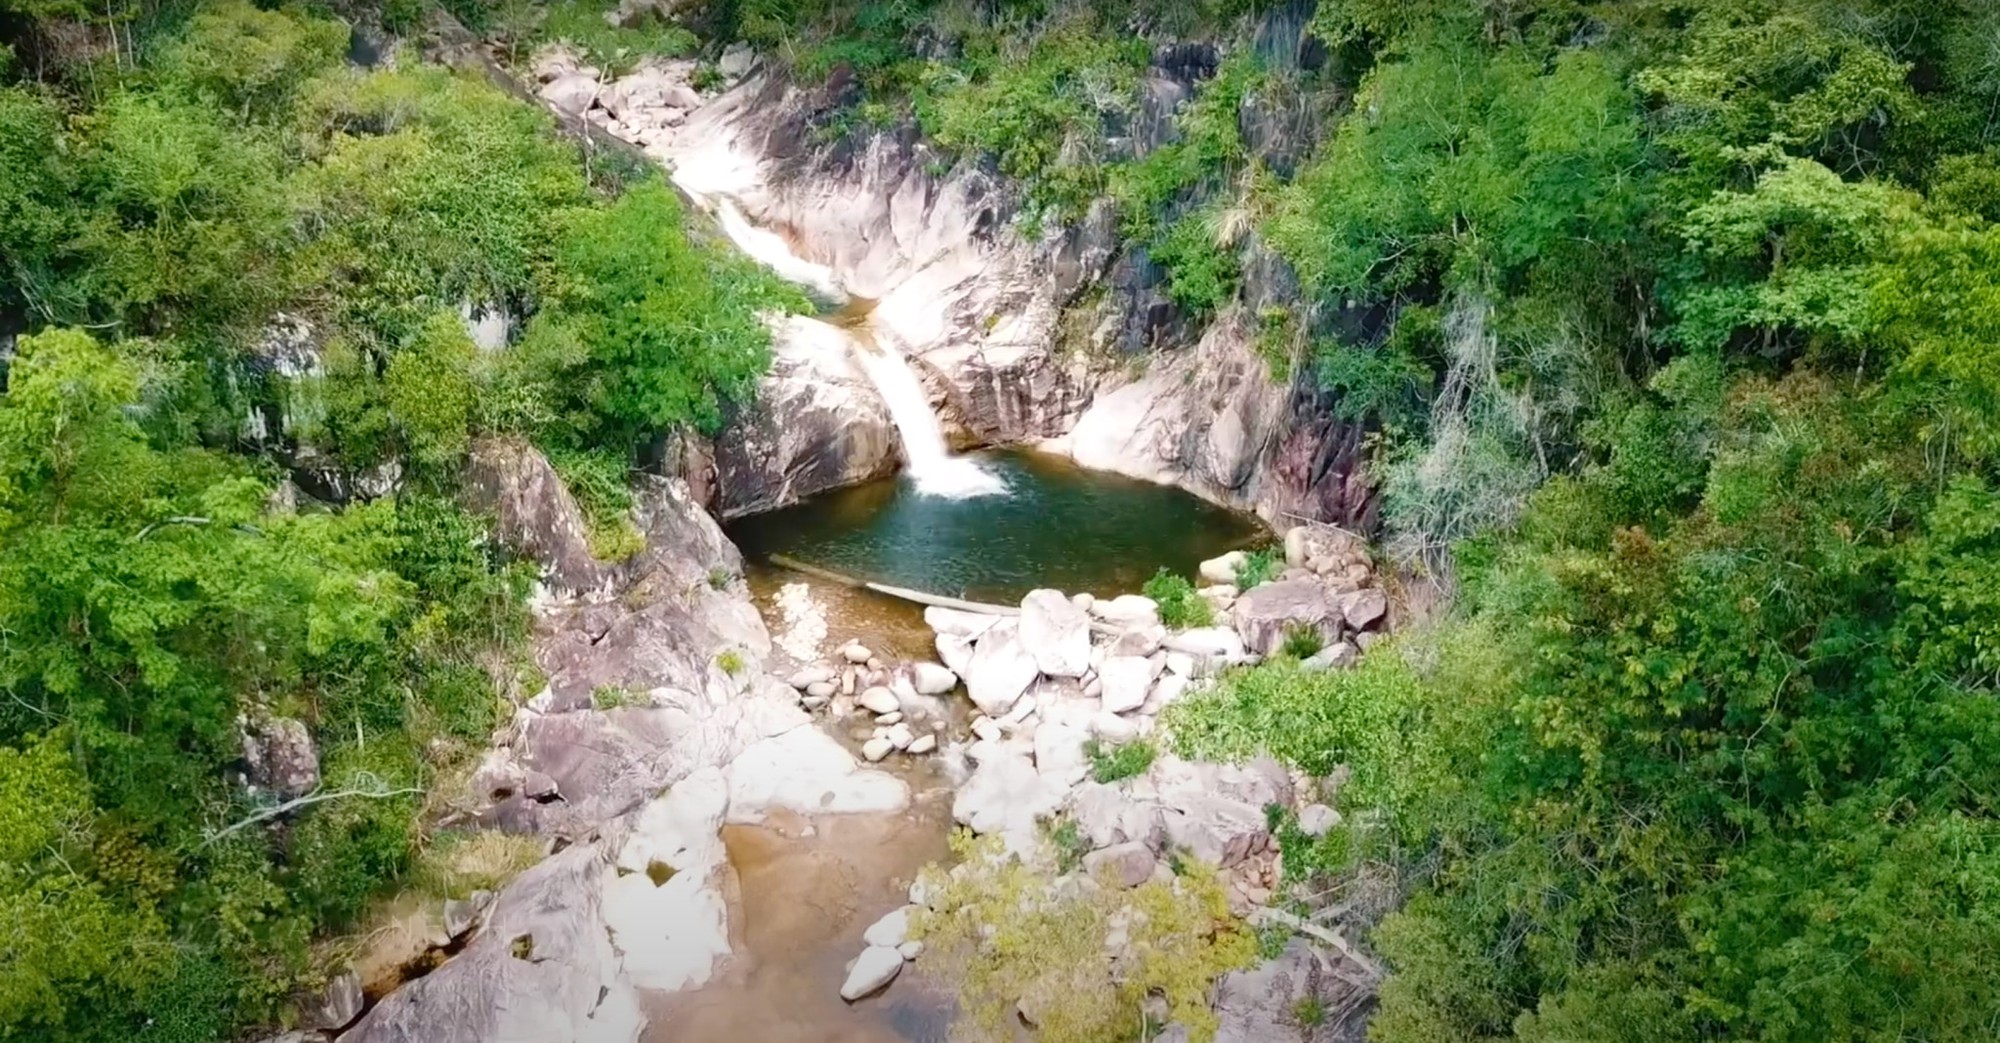 Tìm người mất tích khu vực thác Edu ở Khánh Hòa - Ảnh 2.